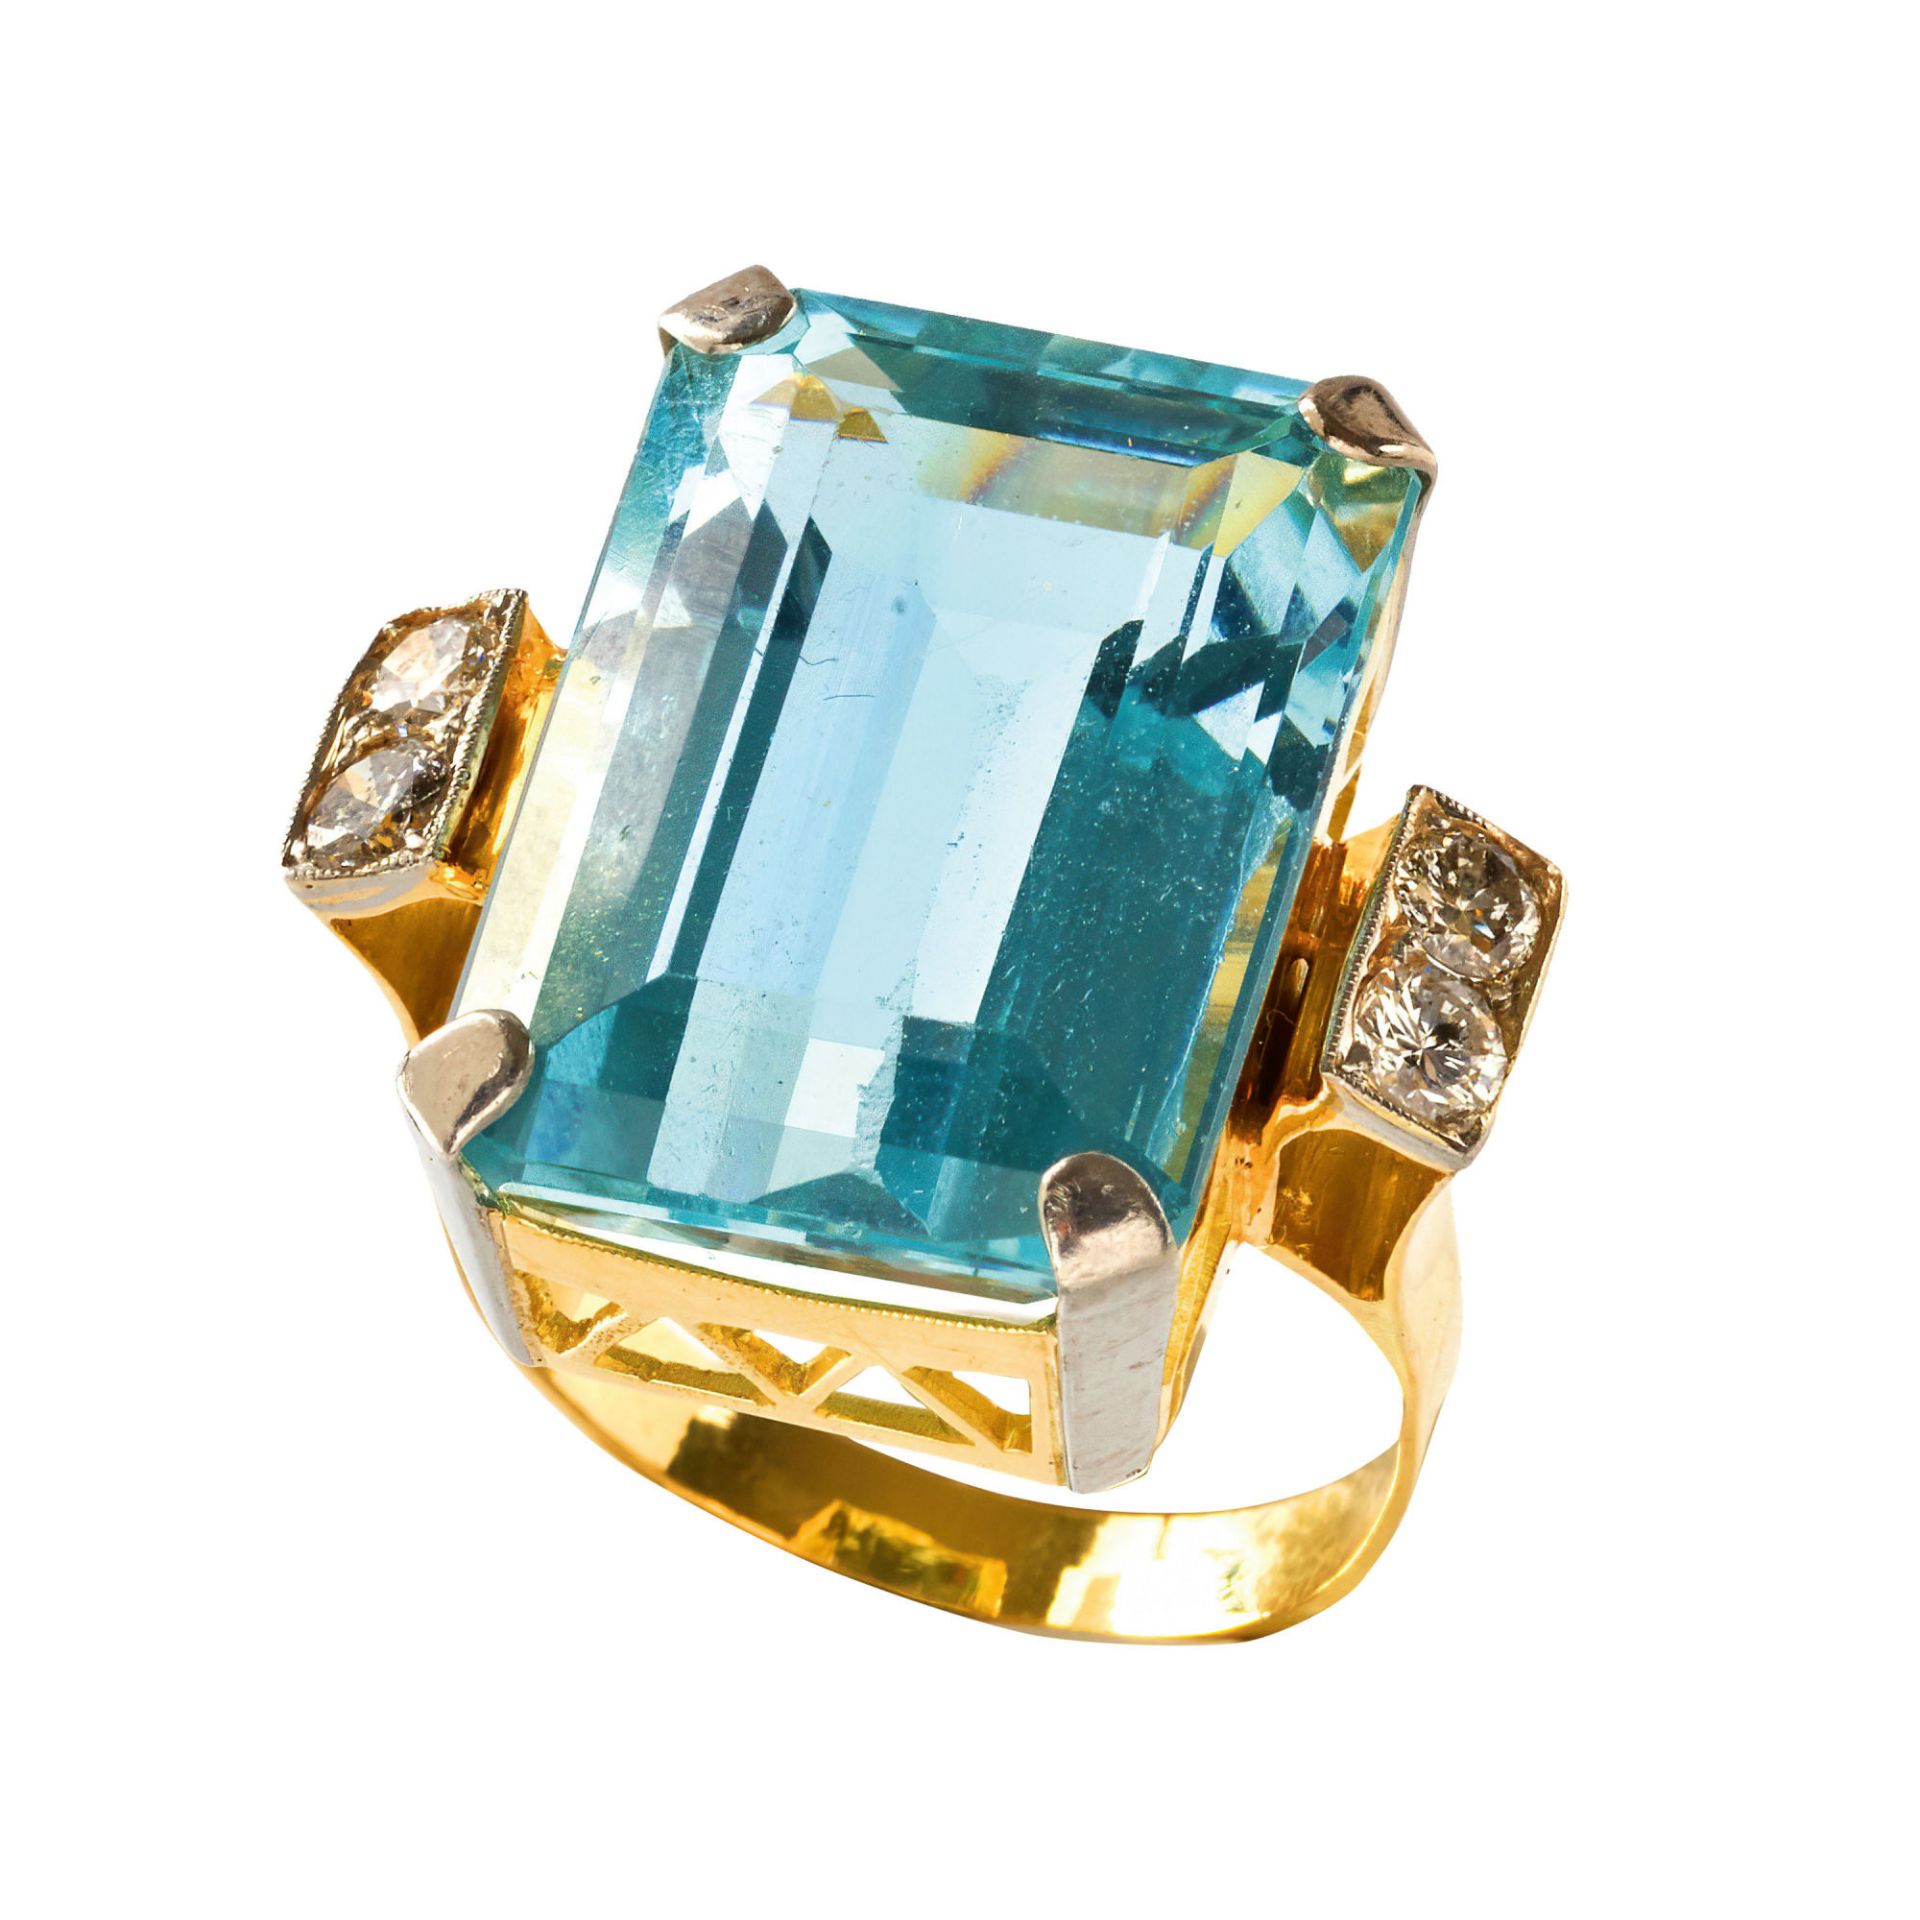 AQUAMARIN-BRILLANT-RING / Aquamarine-diamond-ring 